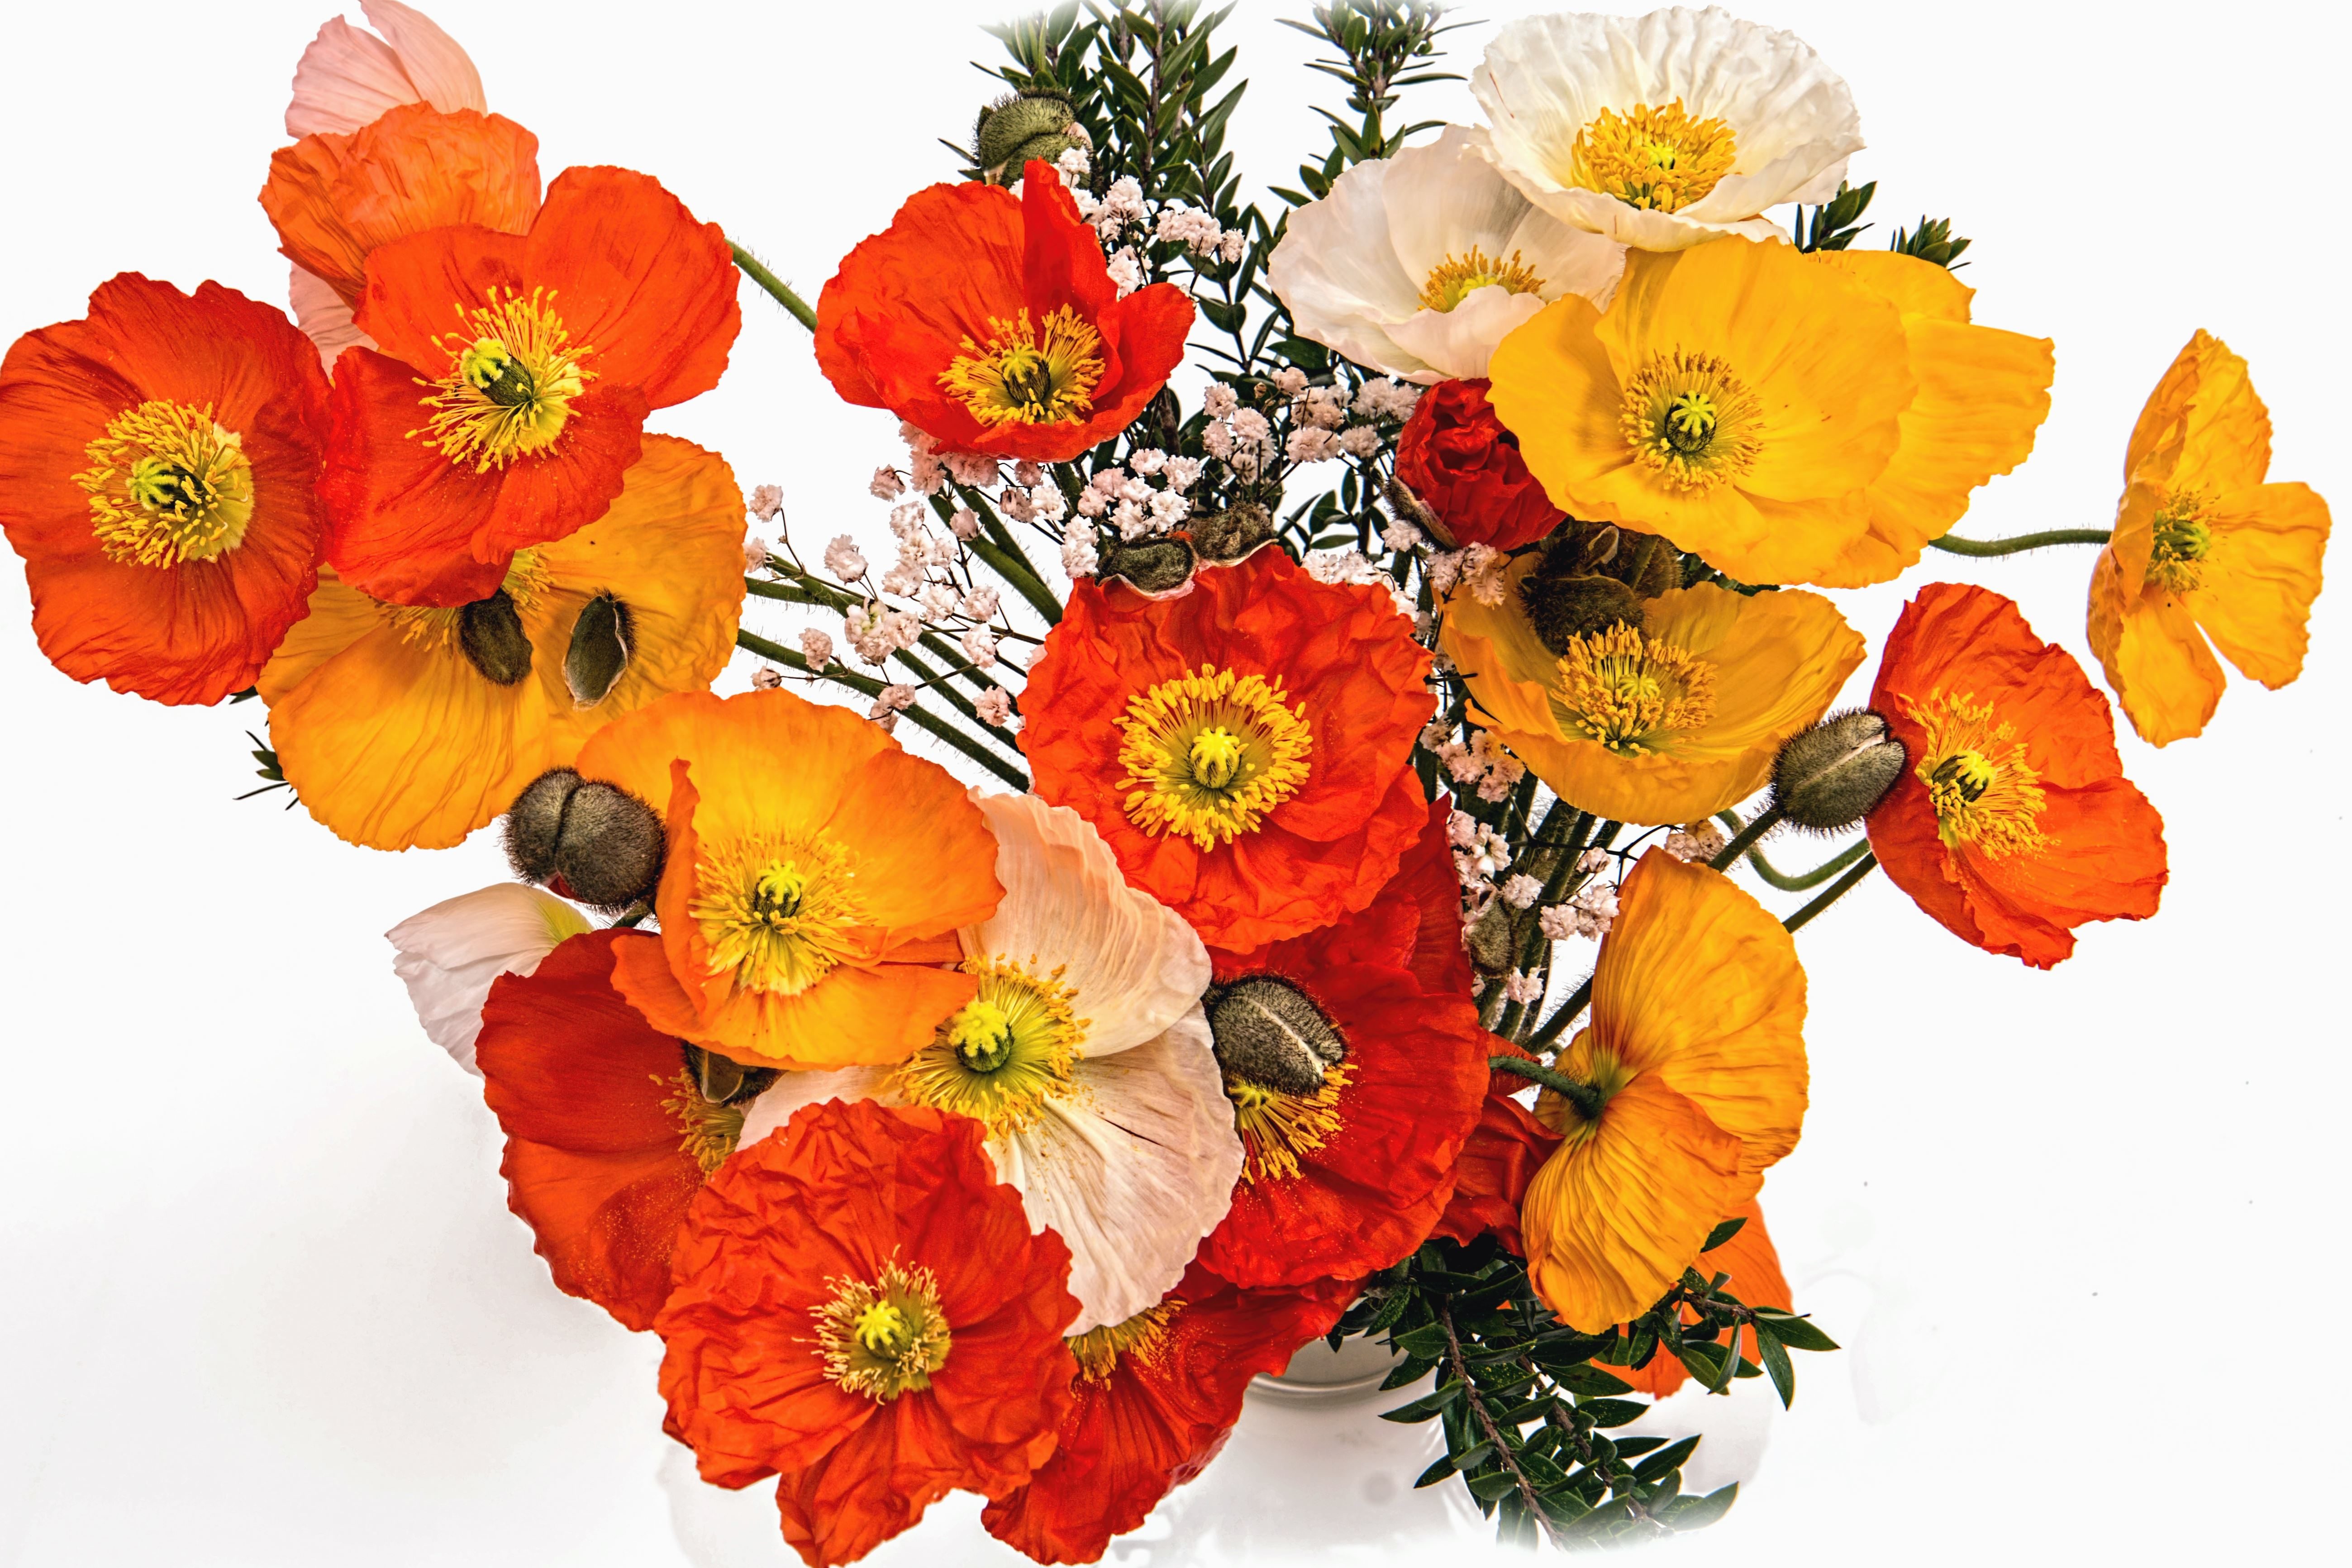 Free picture: bouquet, arrangement, decoration, flower, leaf, petal, plant